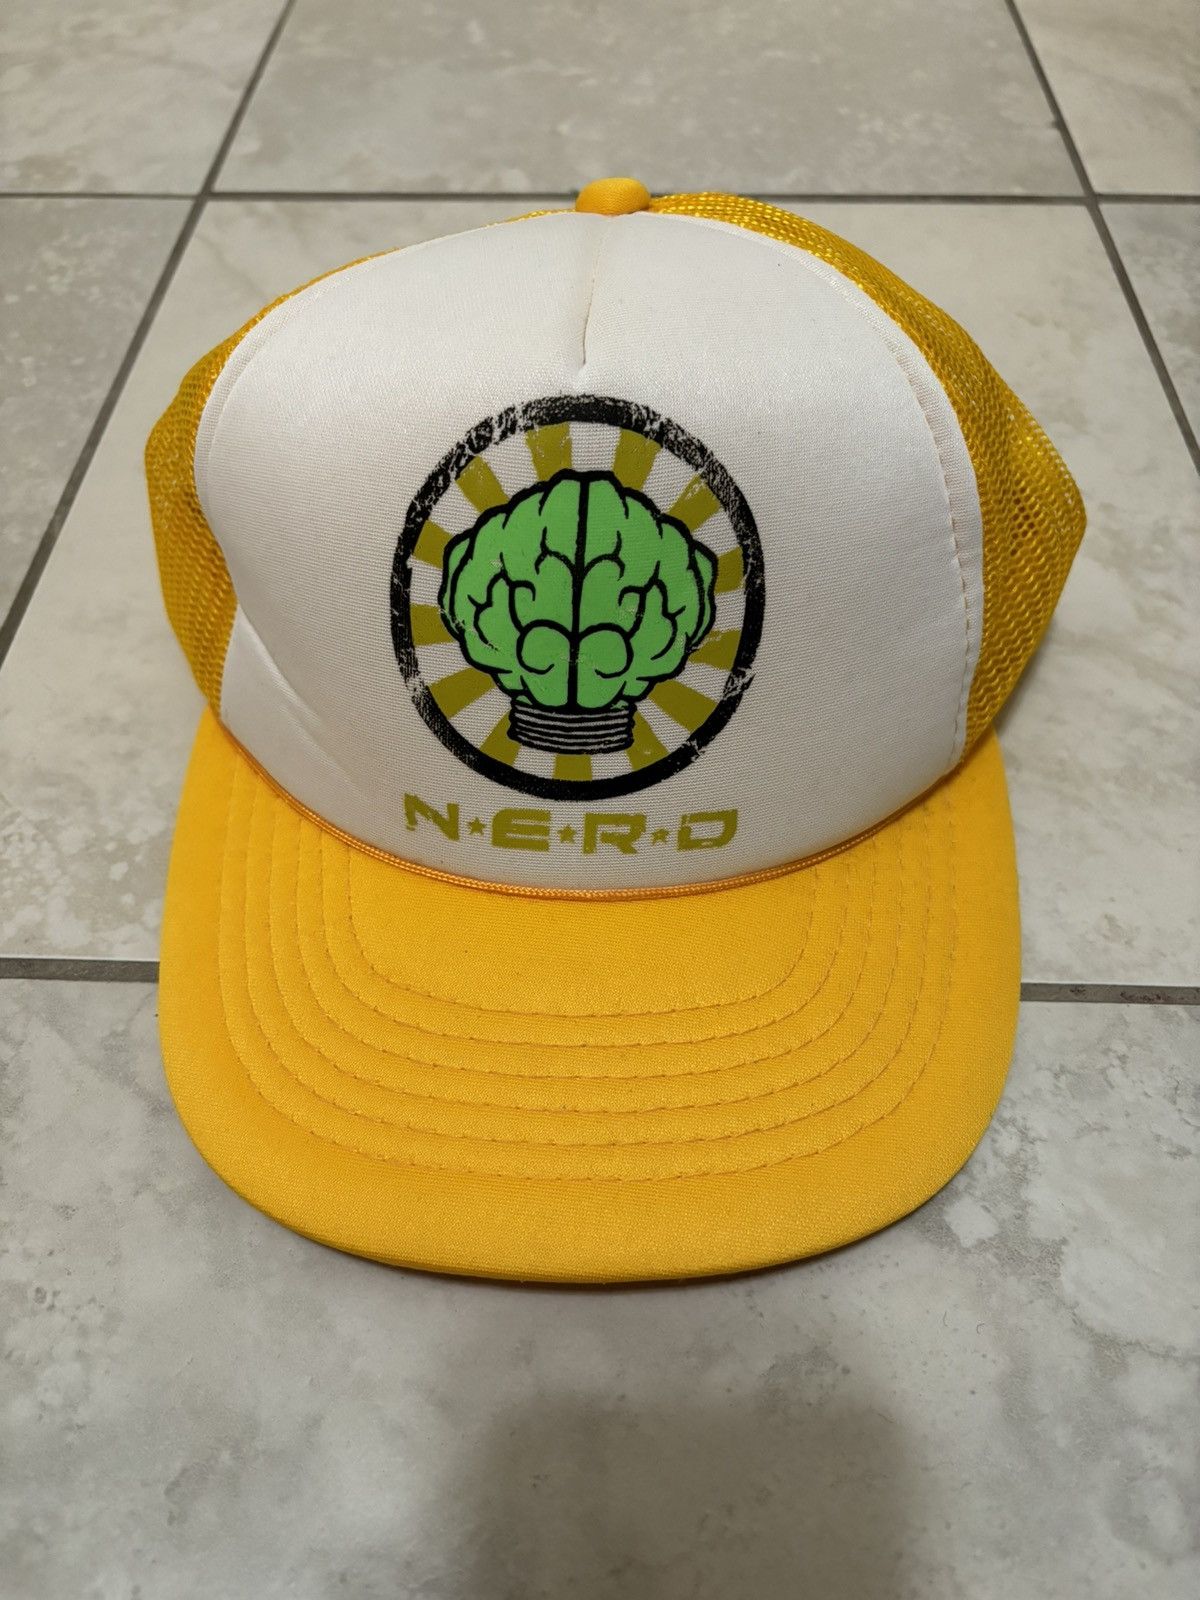 Nerd Pharrell Trucker Hat | Grailed